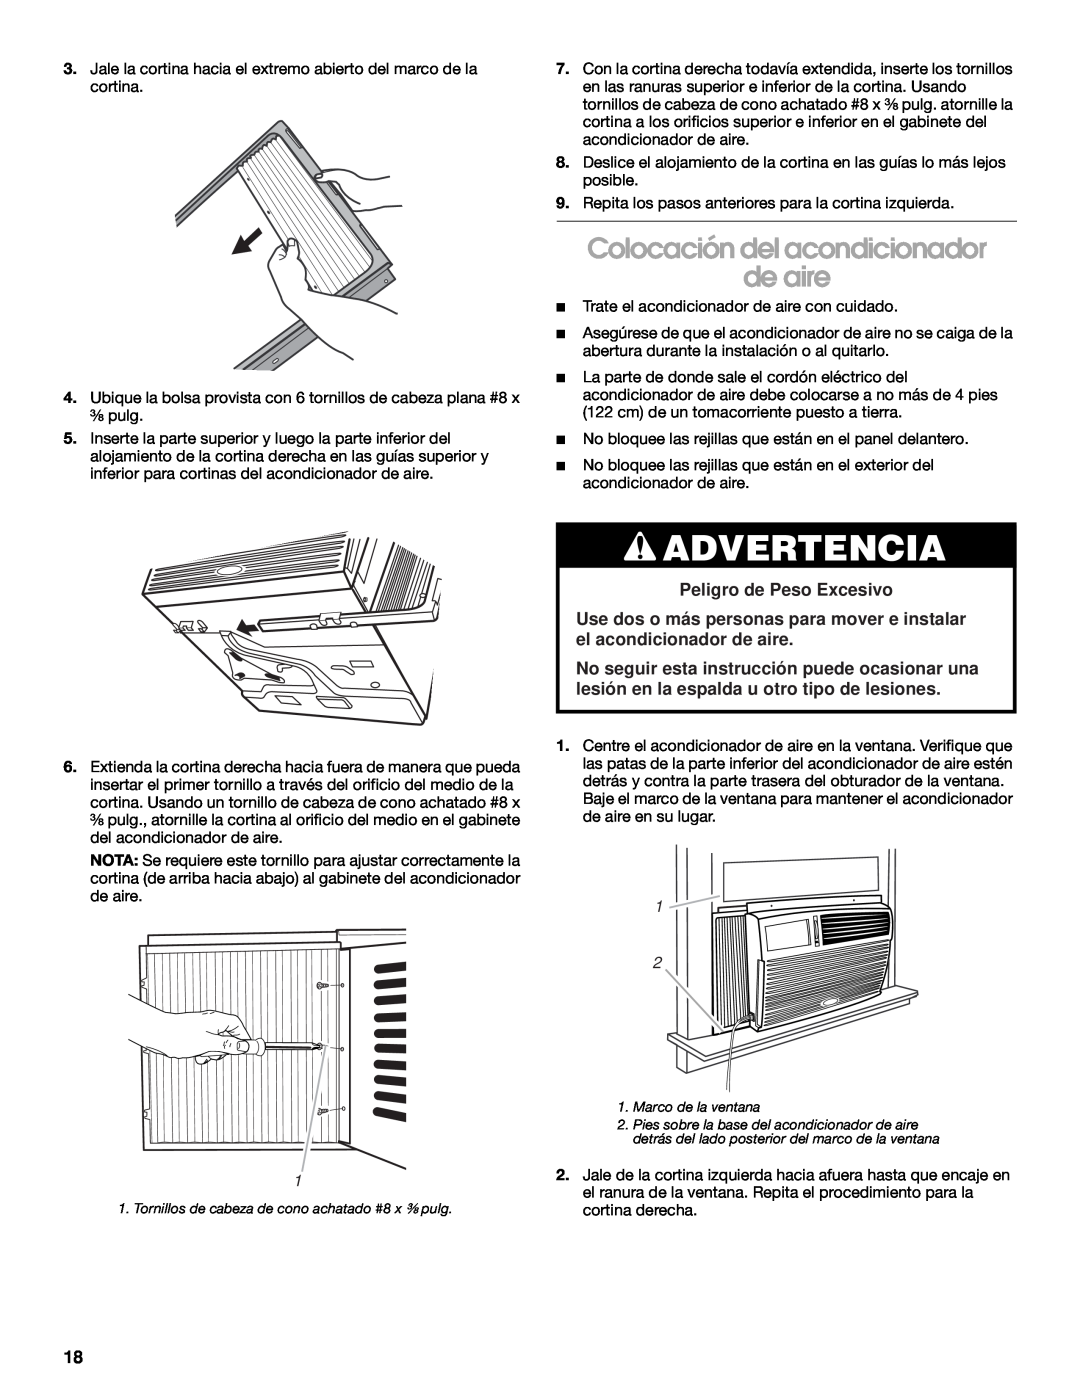 Whirlpool CA10WXP0 manual Colocación del acondicionador de aire, Advertencia, Peligro de Peso Excesivo 